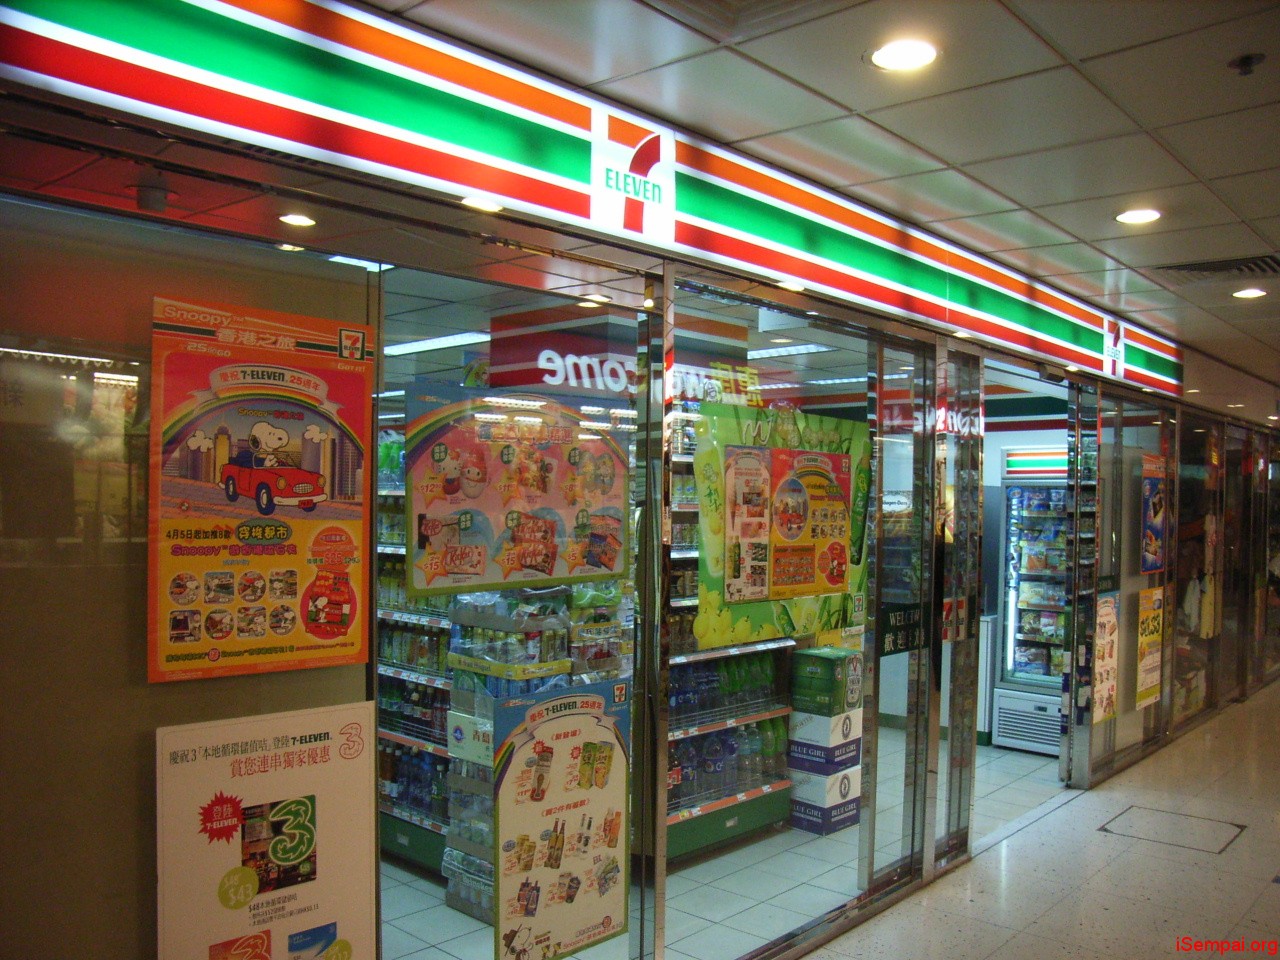 Tập đoàn Nhật Bản sắp mở siêu thị tiện lợi đầu tiên tại VN Tập đoàn Nhật Bản sắp mở siêu thị tiện lợi đầu tiên tại VN 7 eleven